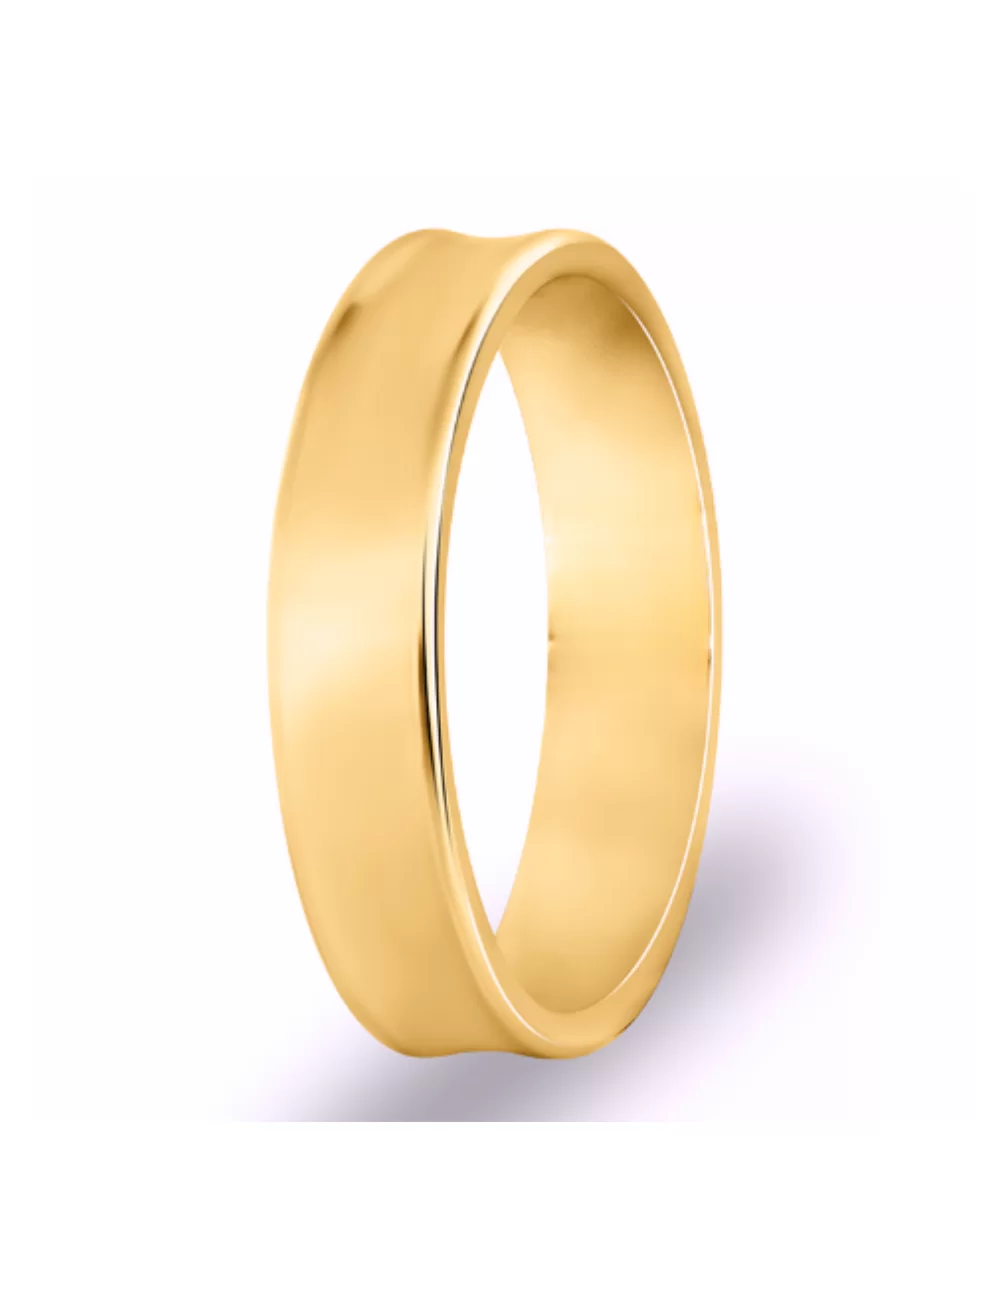 Raudono aukso vyriškas vestuvinis žiedas - Concave Classic II